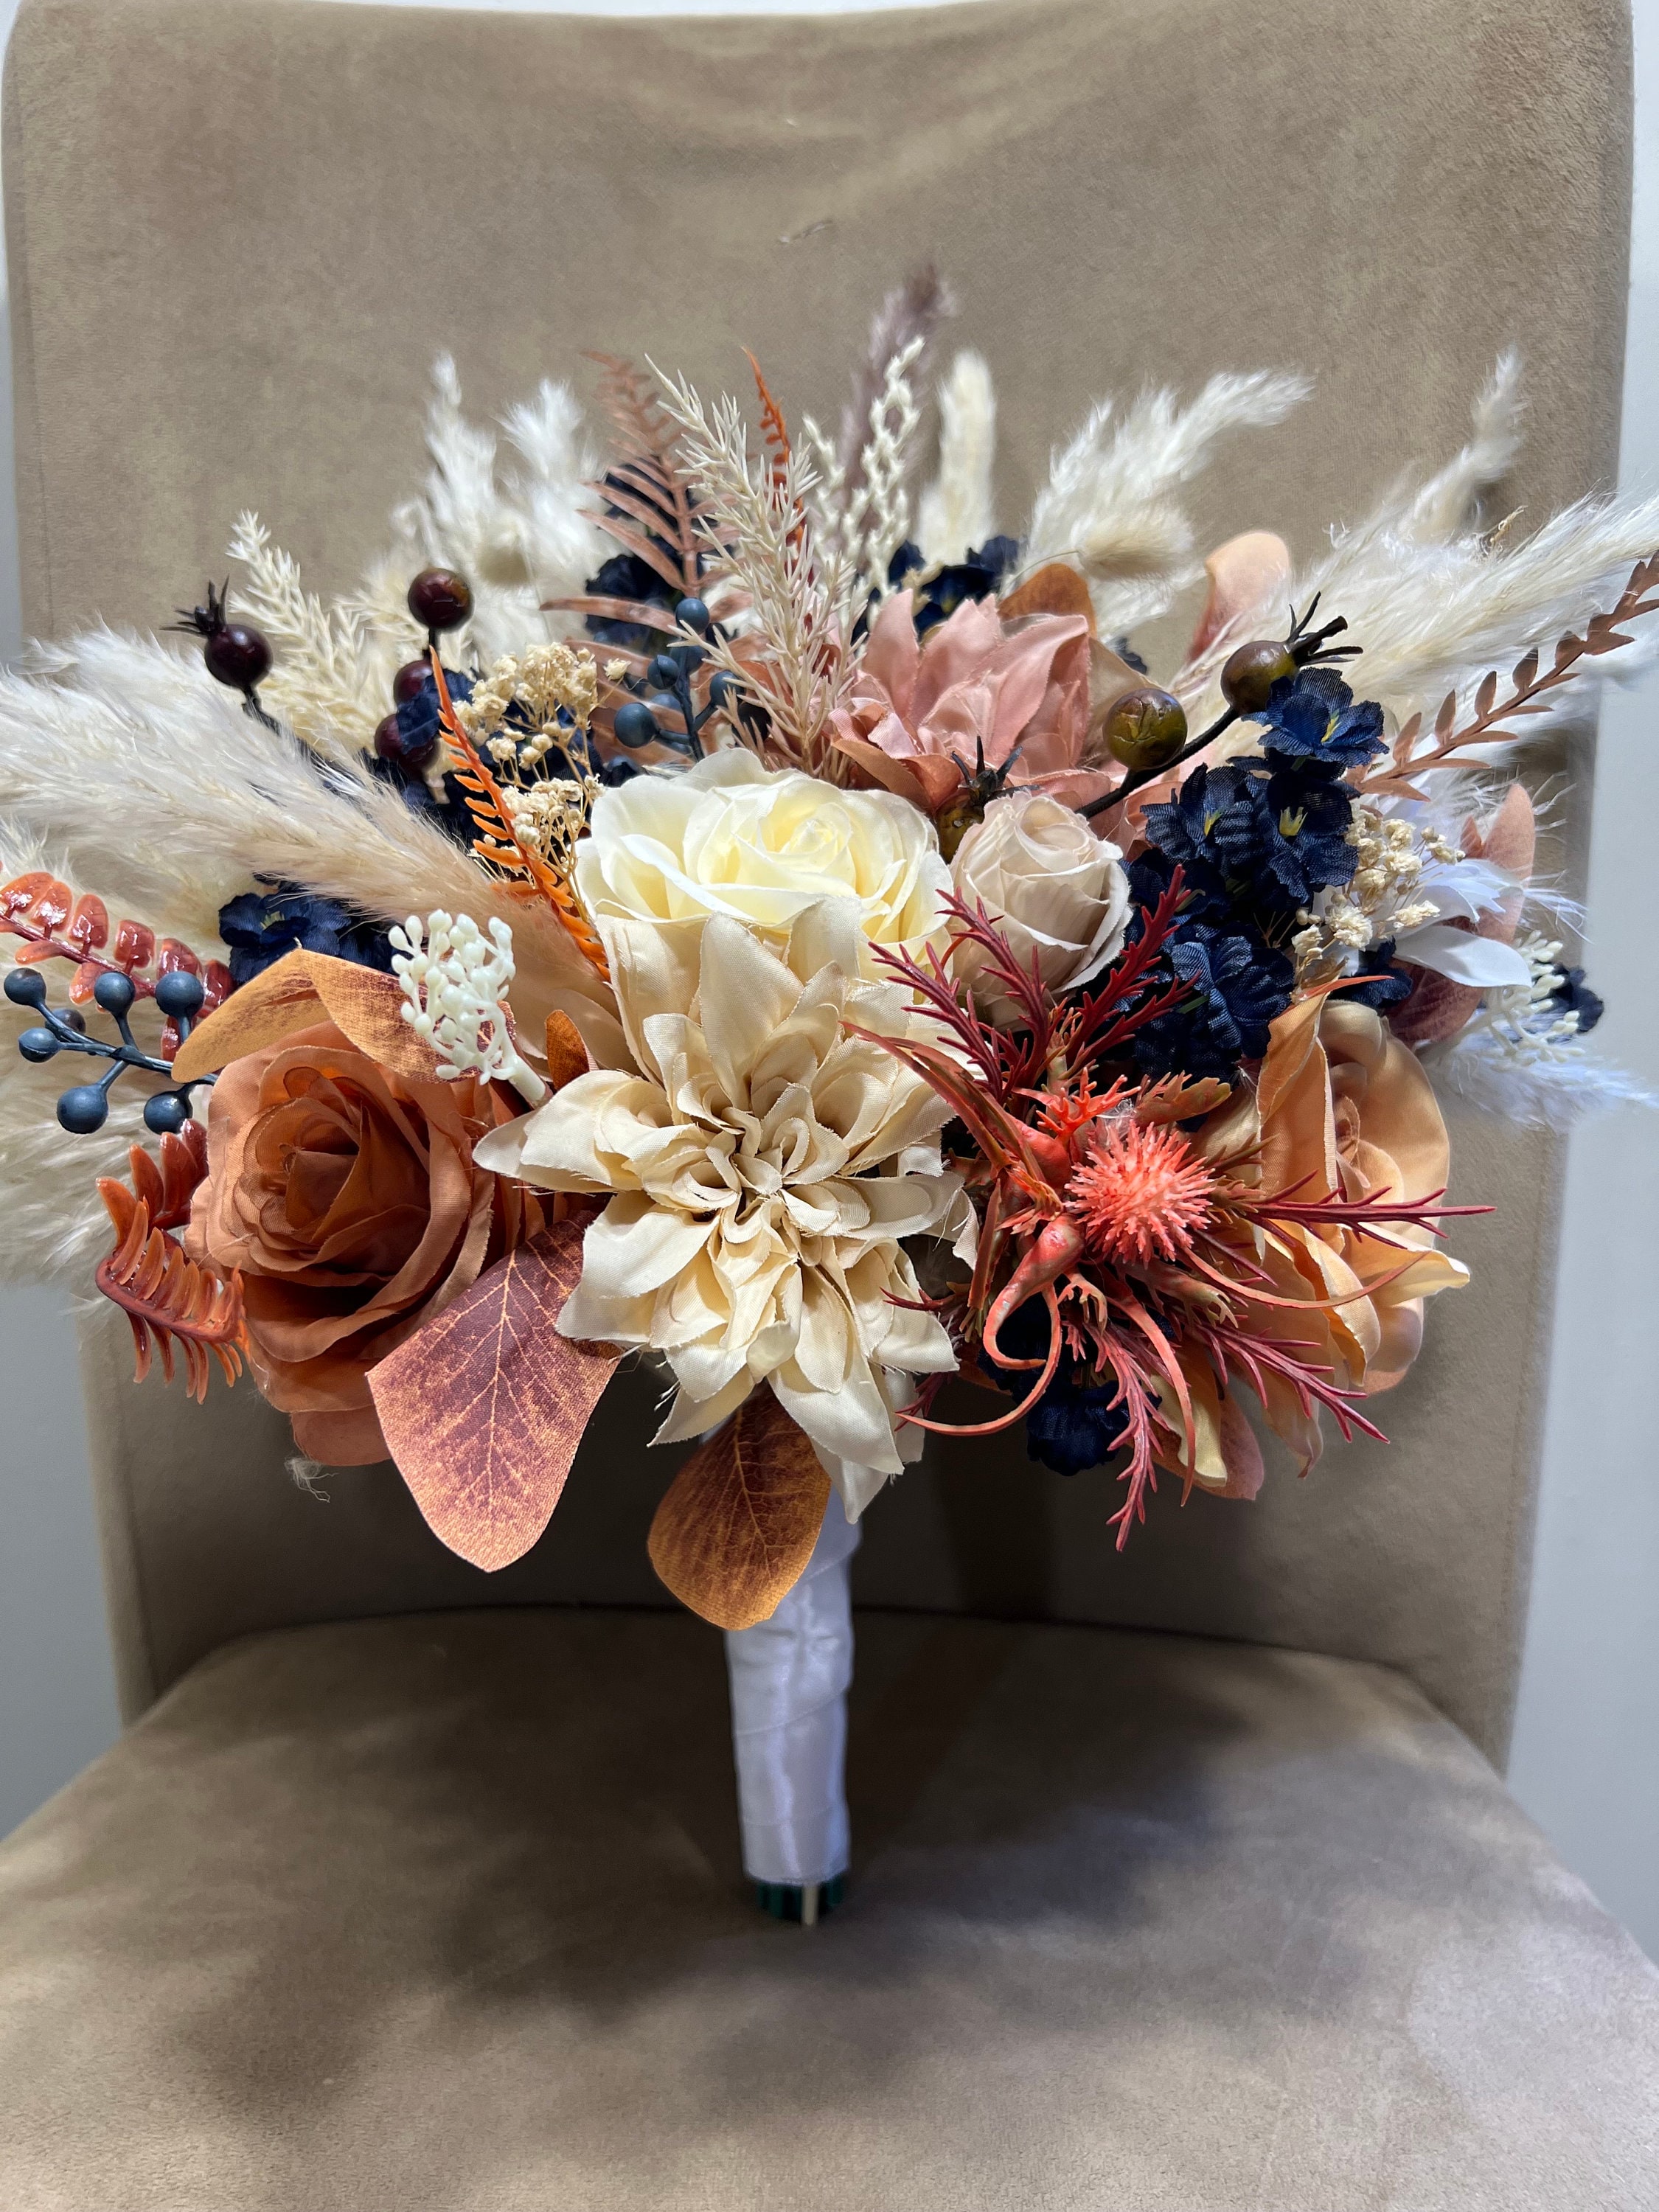 Bridal Bouquet for Fall Wedding With Cedar Rose Wedding Flowers